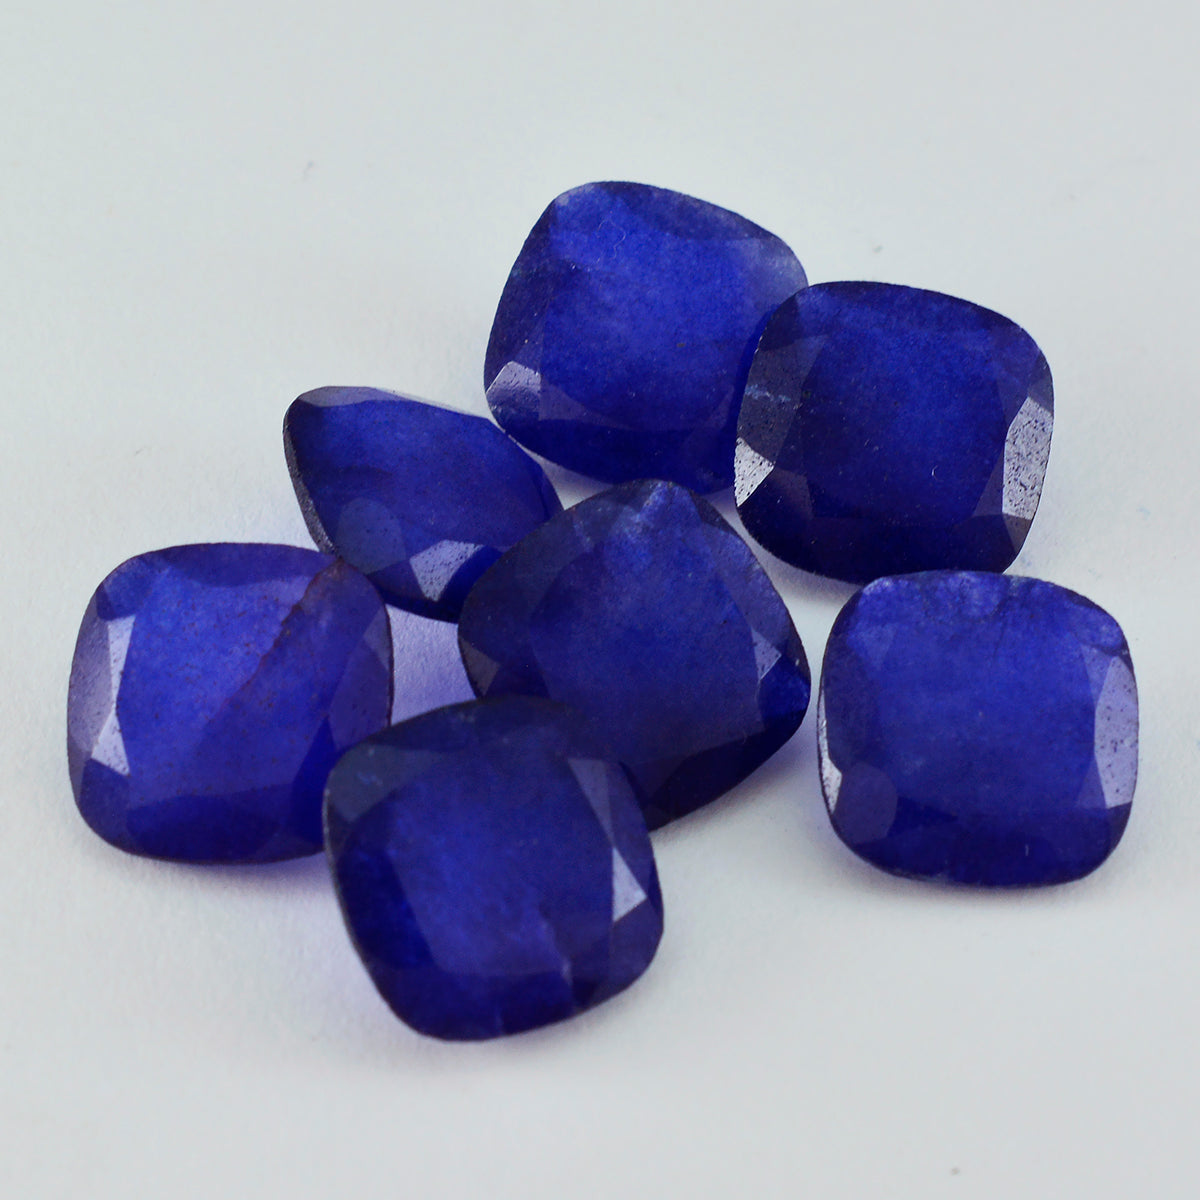 riyogems 1 шт., настоящая синяя яшма, граненая 8x8 мм, форма подушки, качество AAA, россыпь драгоценных камней